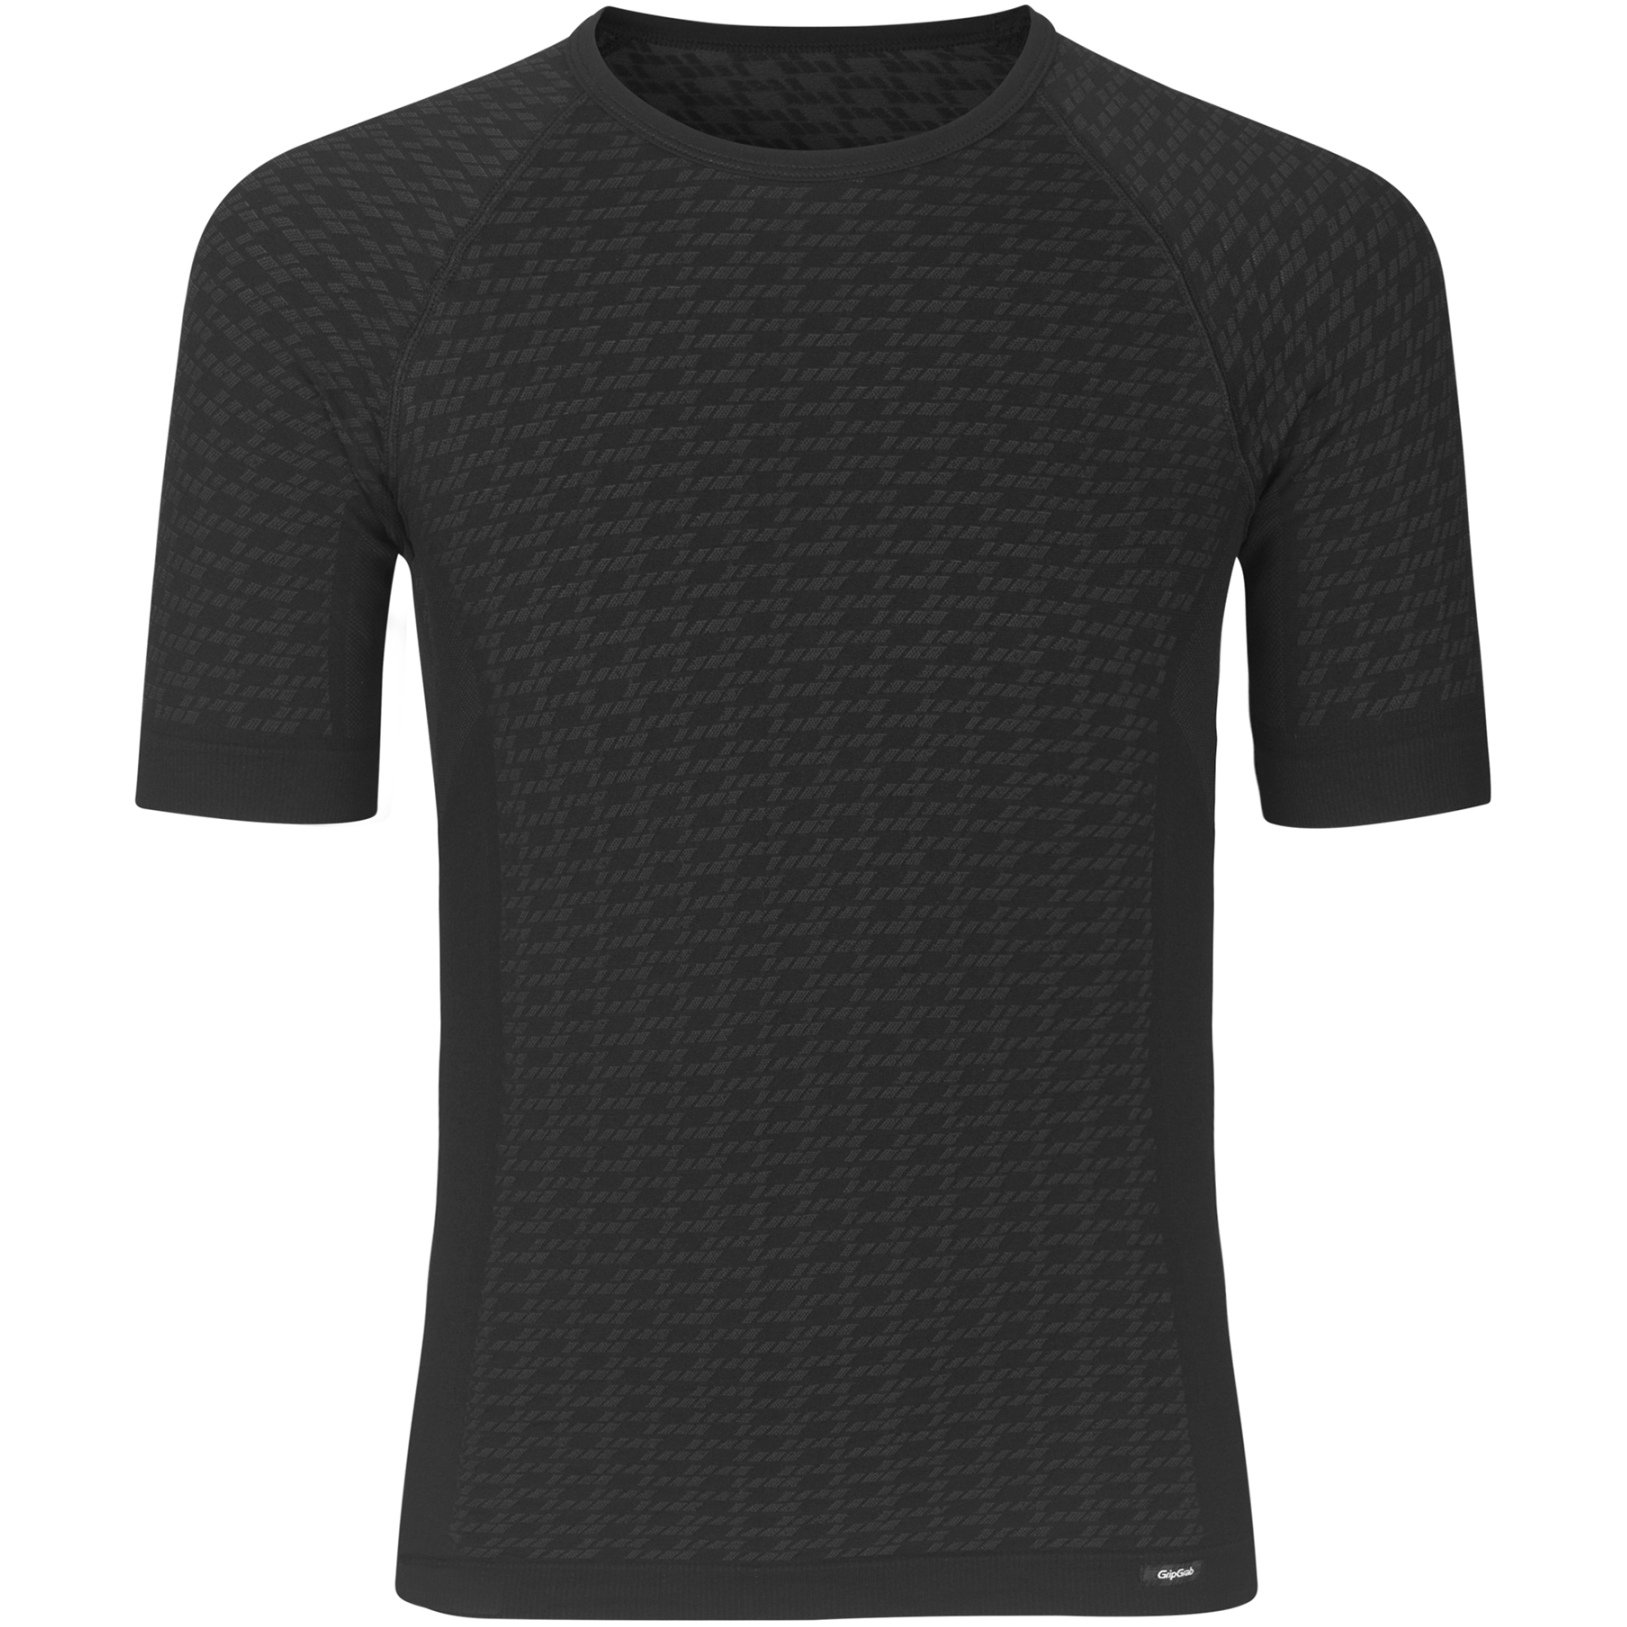 Produktbild von GripGrab Expert Seamless Kurzärmliges Unterhemd - Black